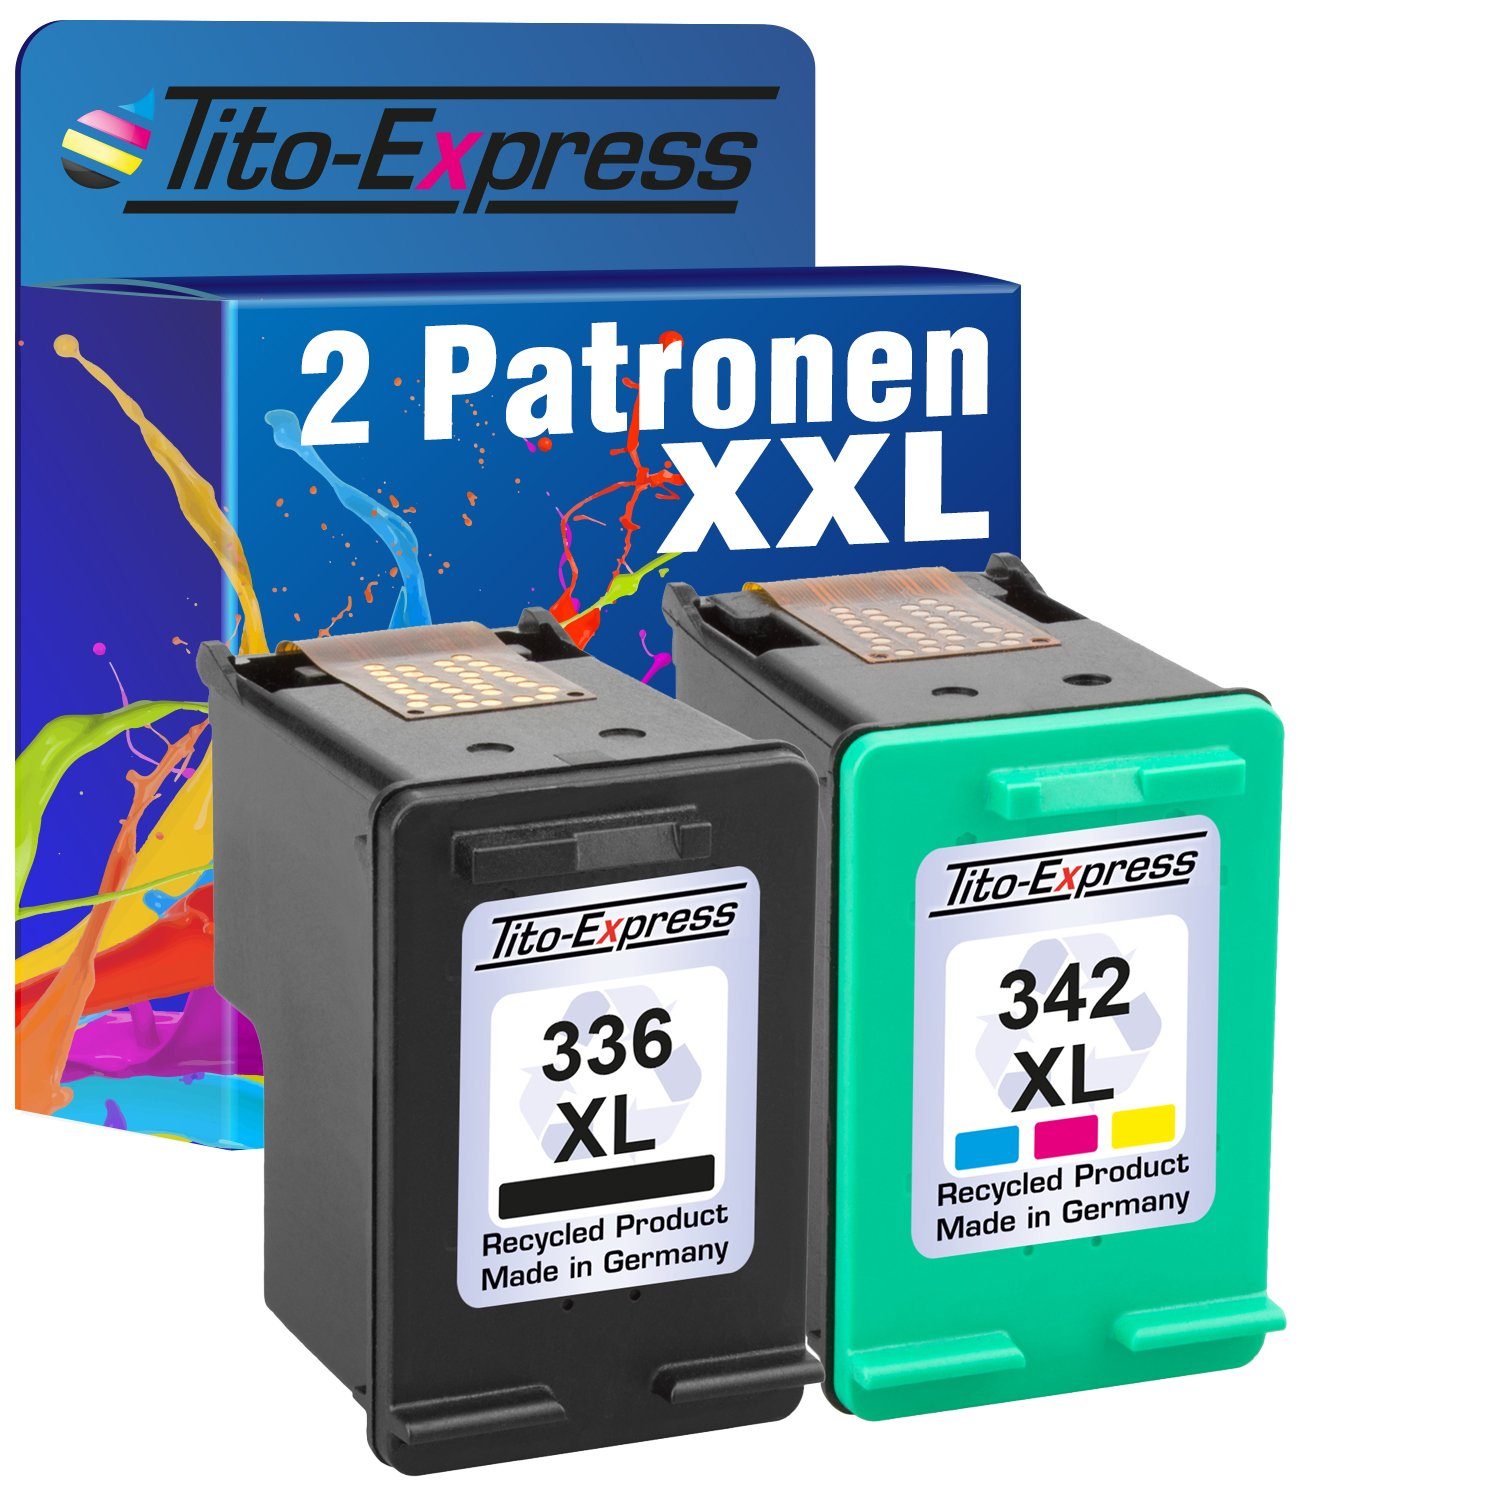 Tito-Express 2er Set ersetzt HP XL 5400 336 C3190 C3180 Tintenpatrone C3185 & Photosmart 342 XL (für DeskJet 5420V) HP C3194 Series C3170